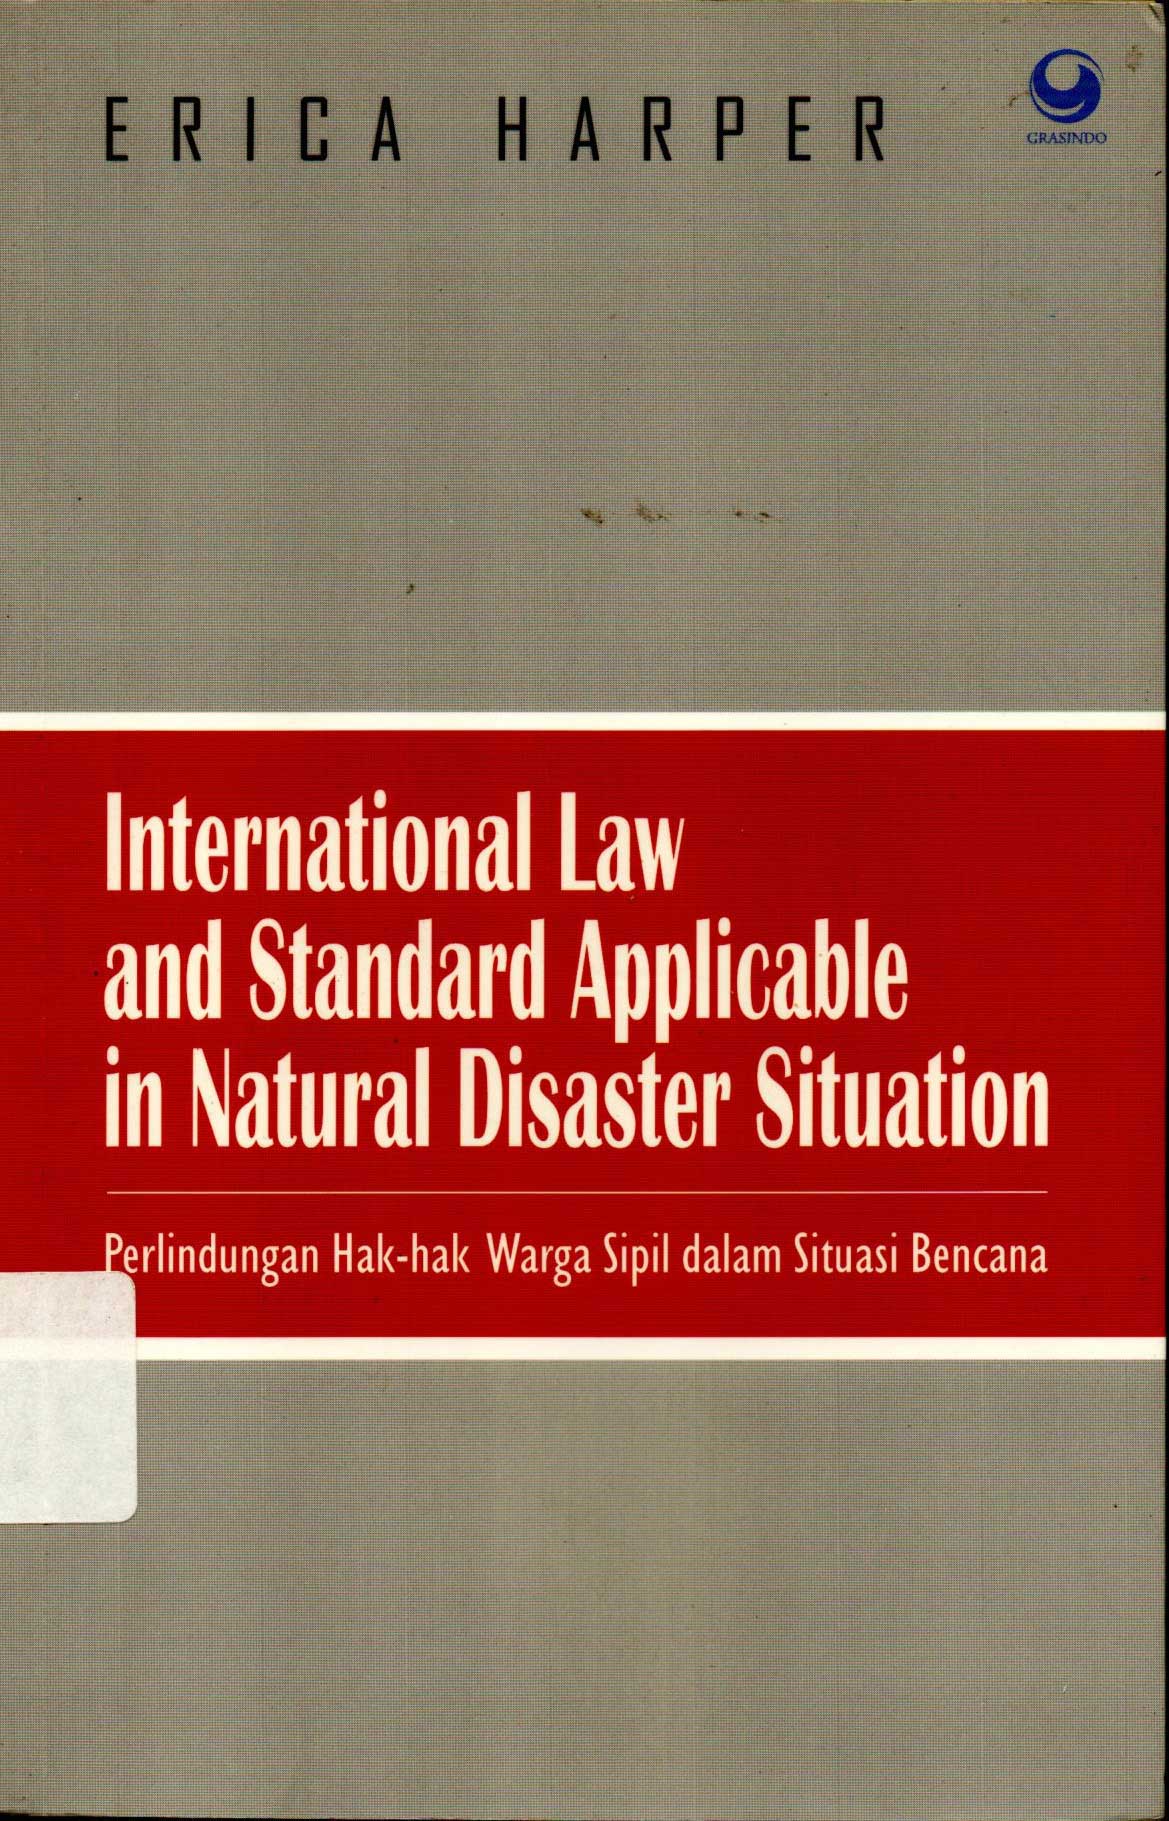 International Law and Standard Applicable in Natural Disaster Situation perlindungan Hak-hak warga sipil dalam situasi bencana